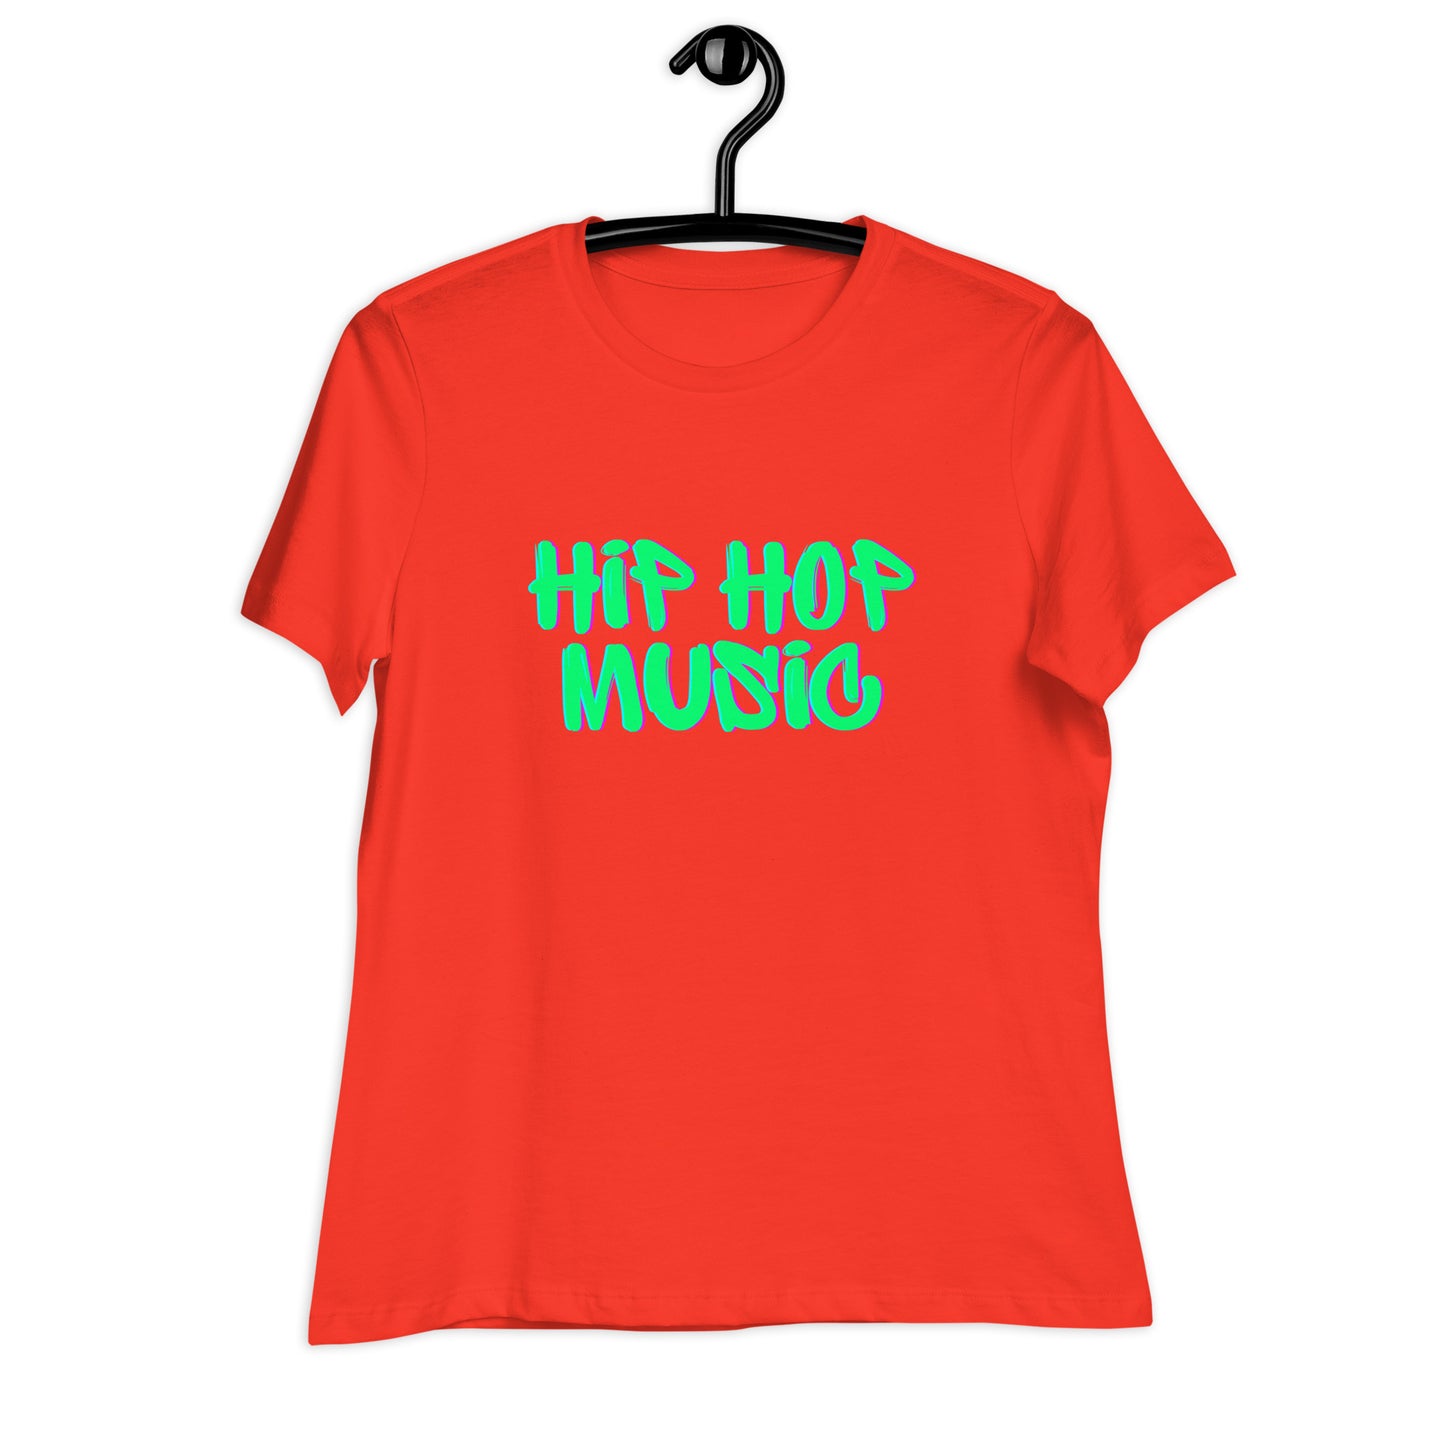 Hip Hop Music Girls and Women's Relaxed T-Shirt